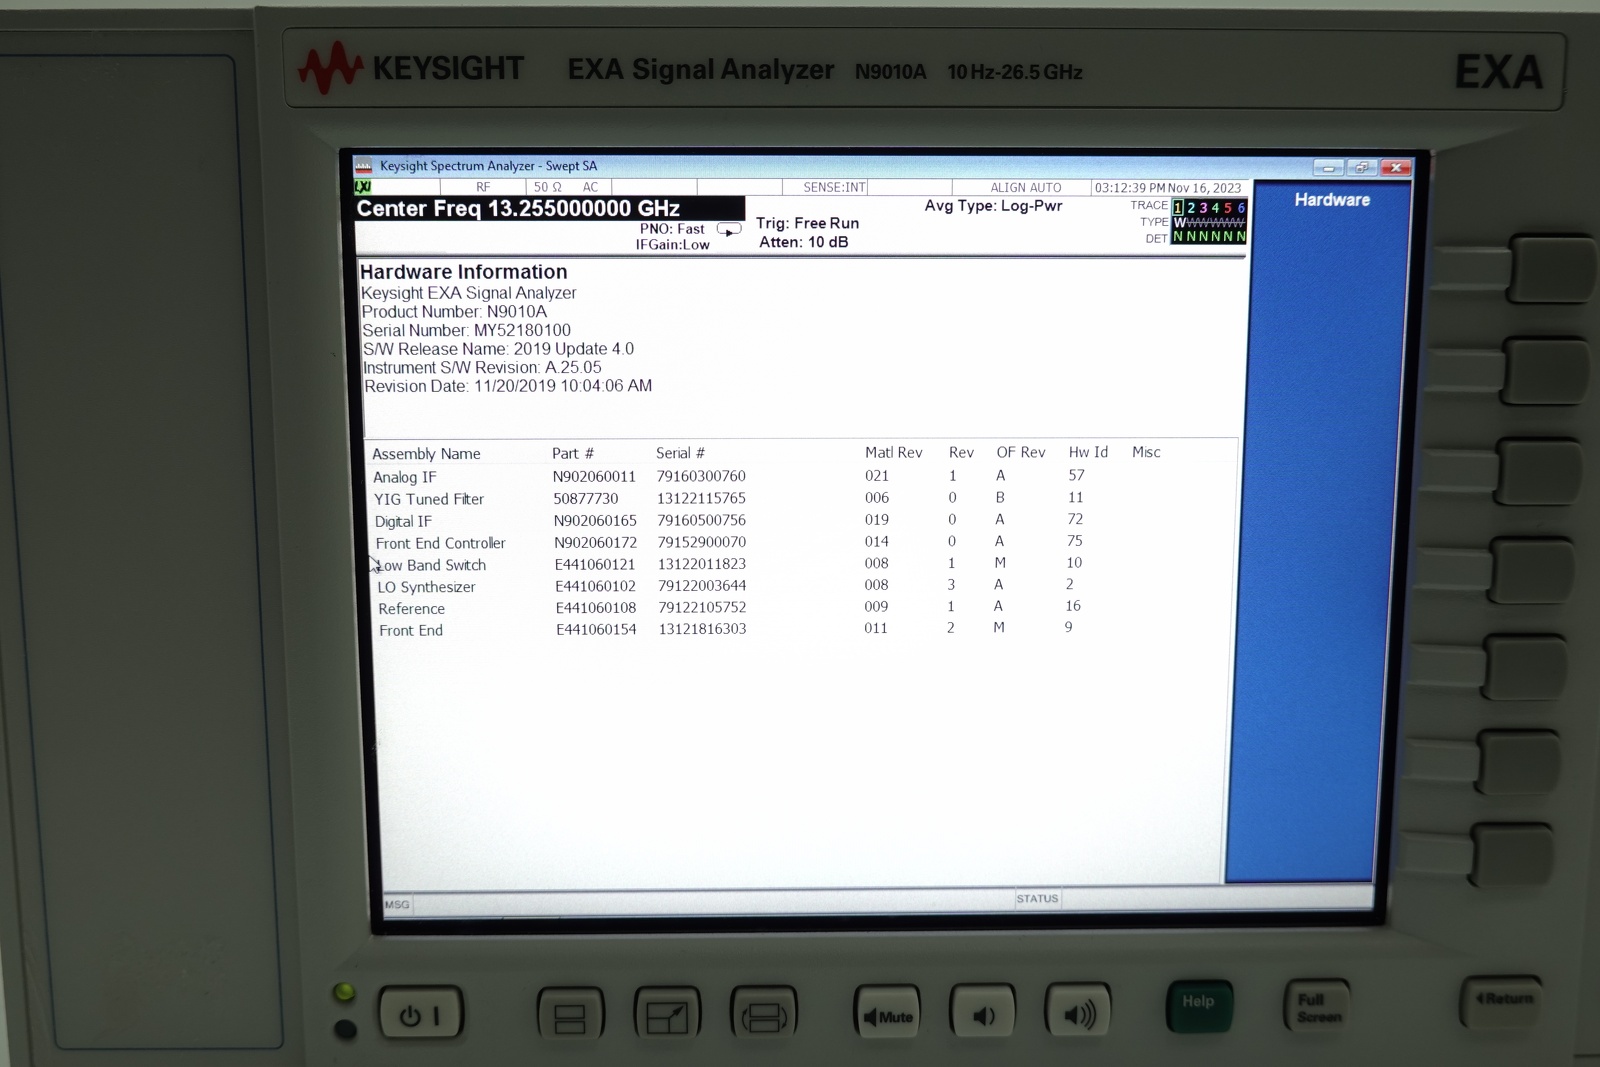 Keysight N9010A-526 10 Hz to 26.5 GHz